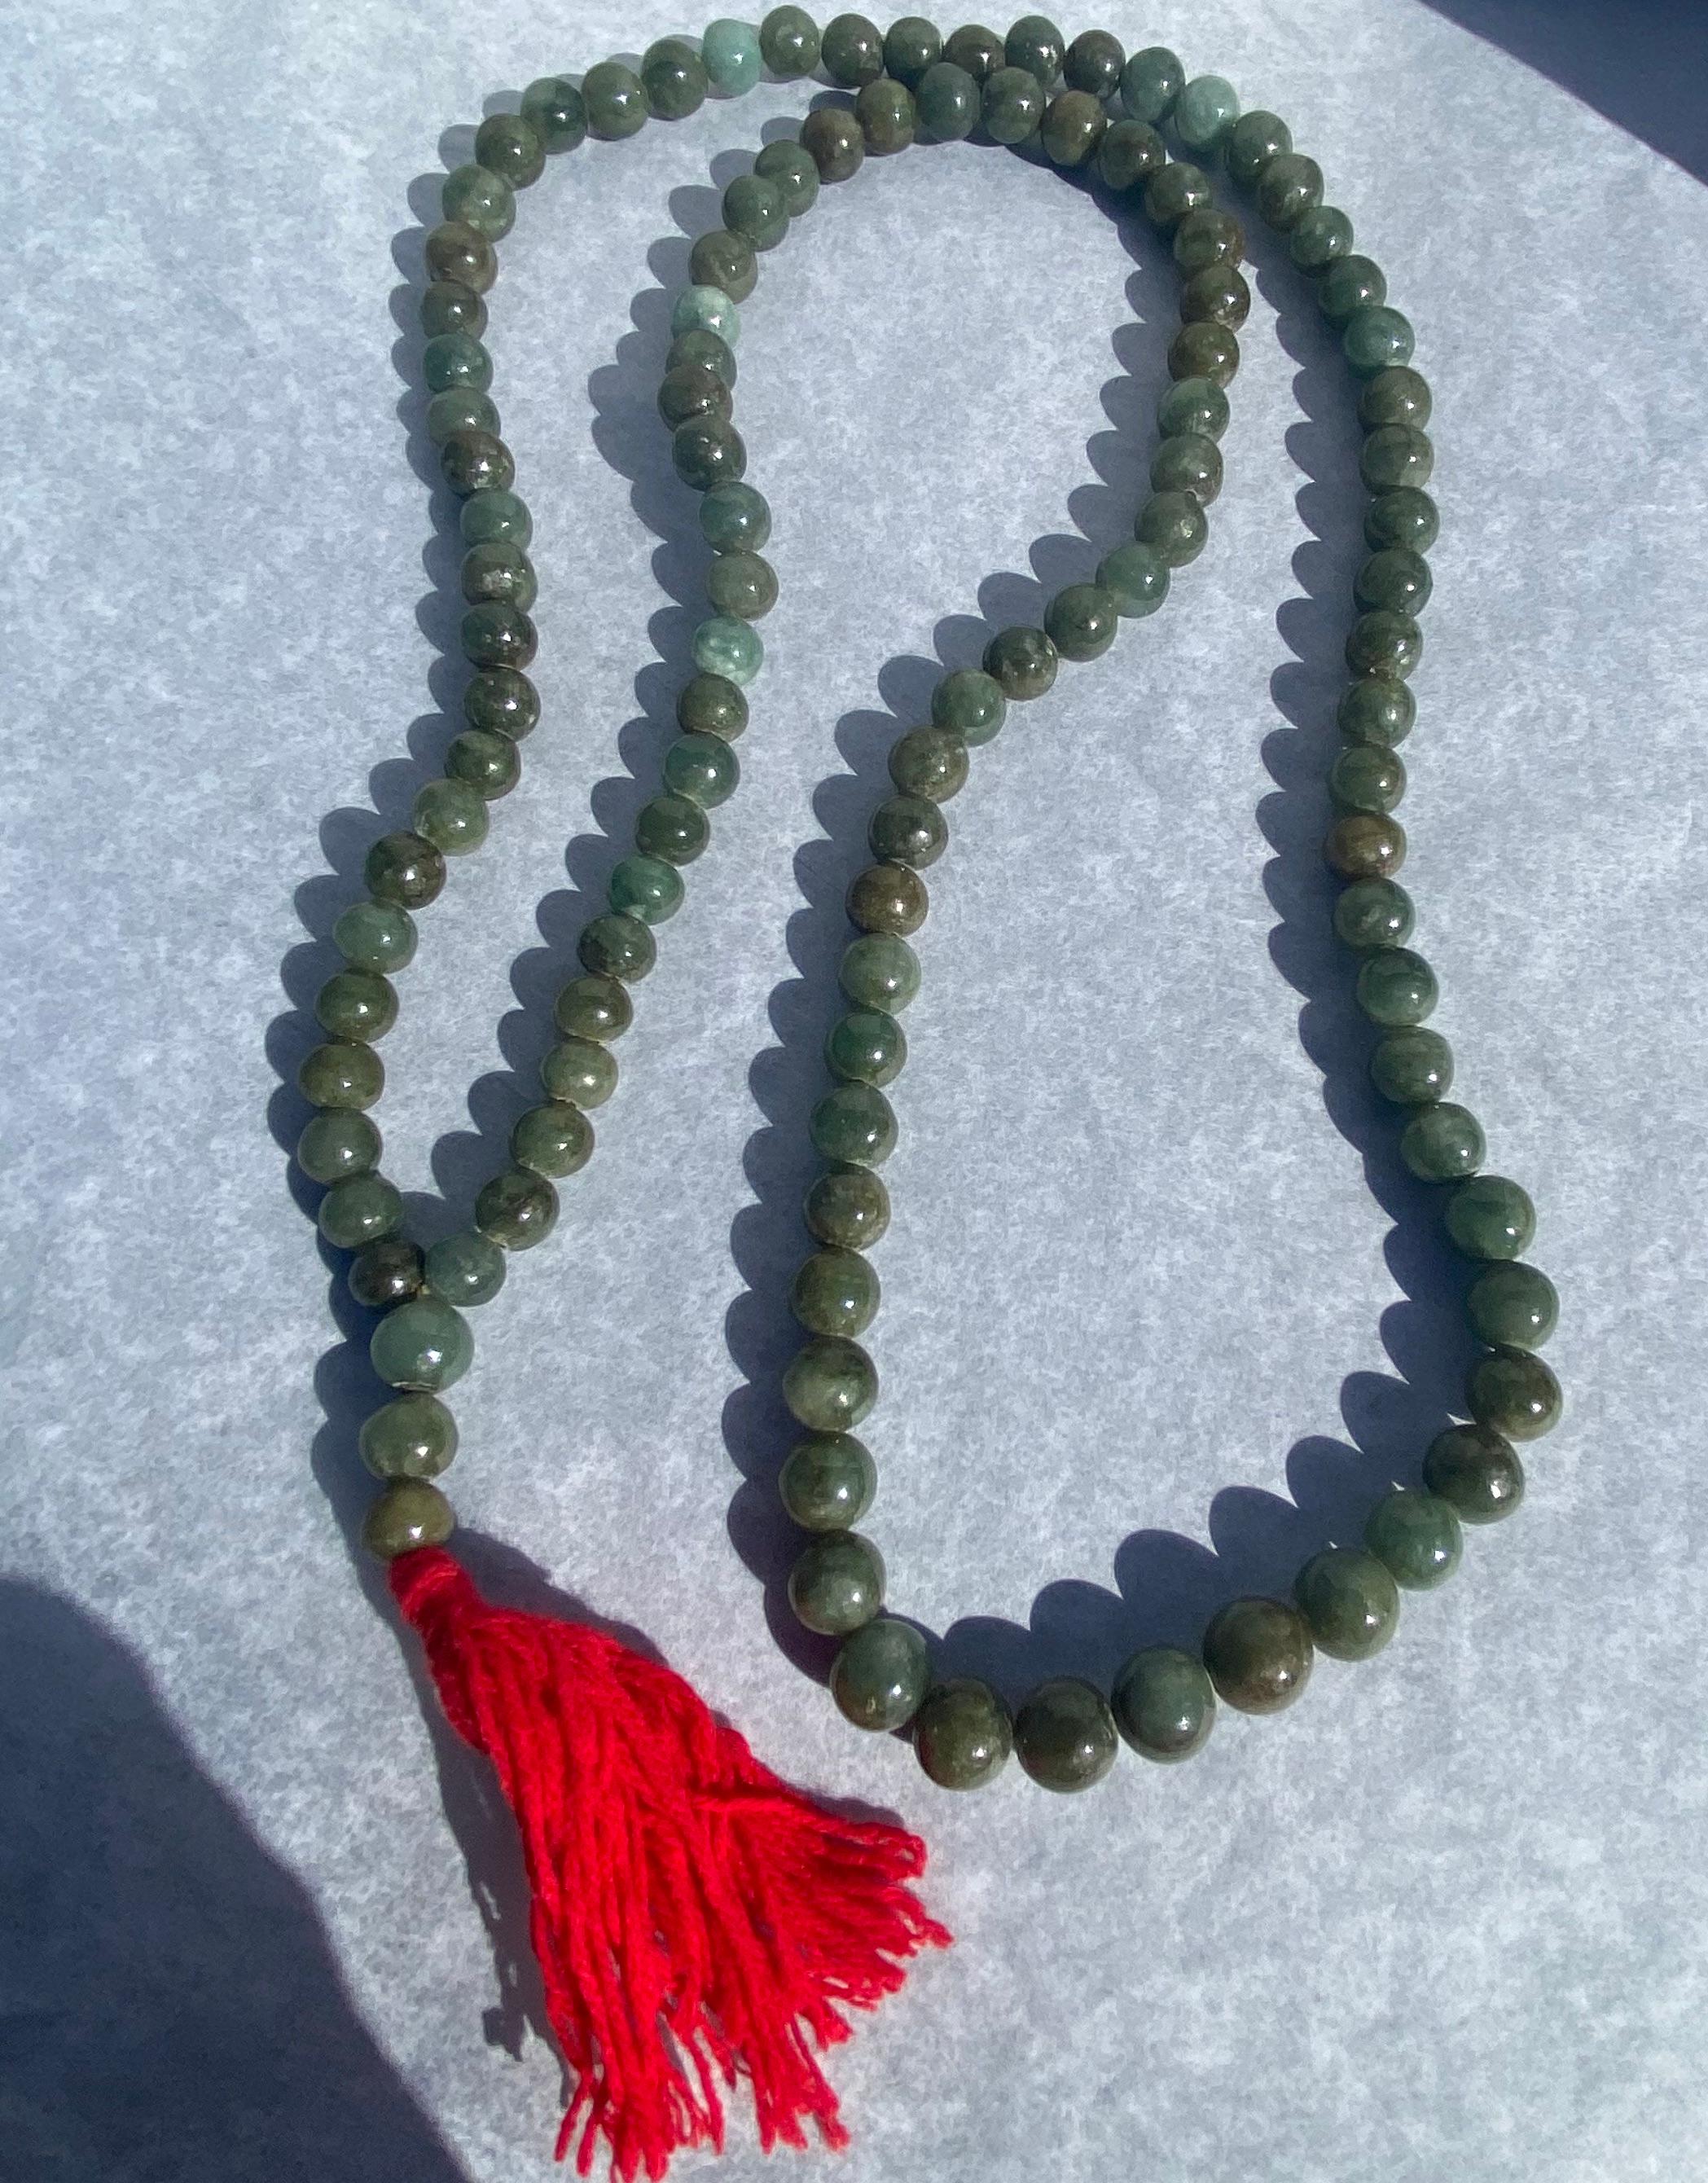 Mehrfarbige grüne Jade ist auf einer langen 40-Zoll-Schnur aufgereiht.
Ausziehbare Länge ist 3-1/2 